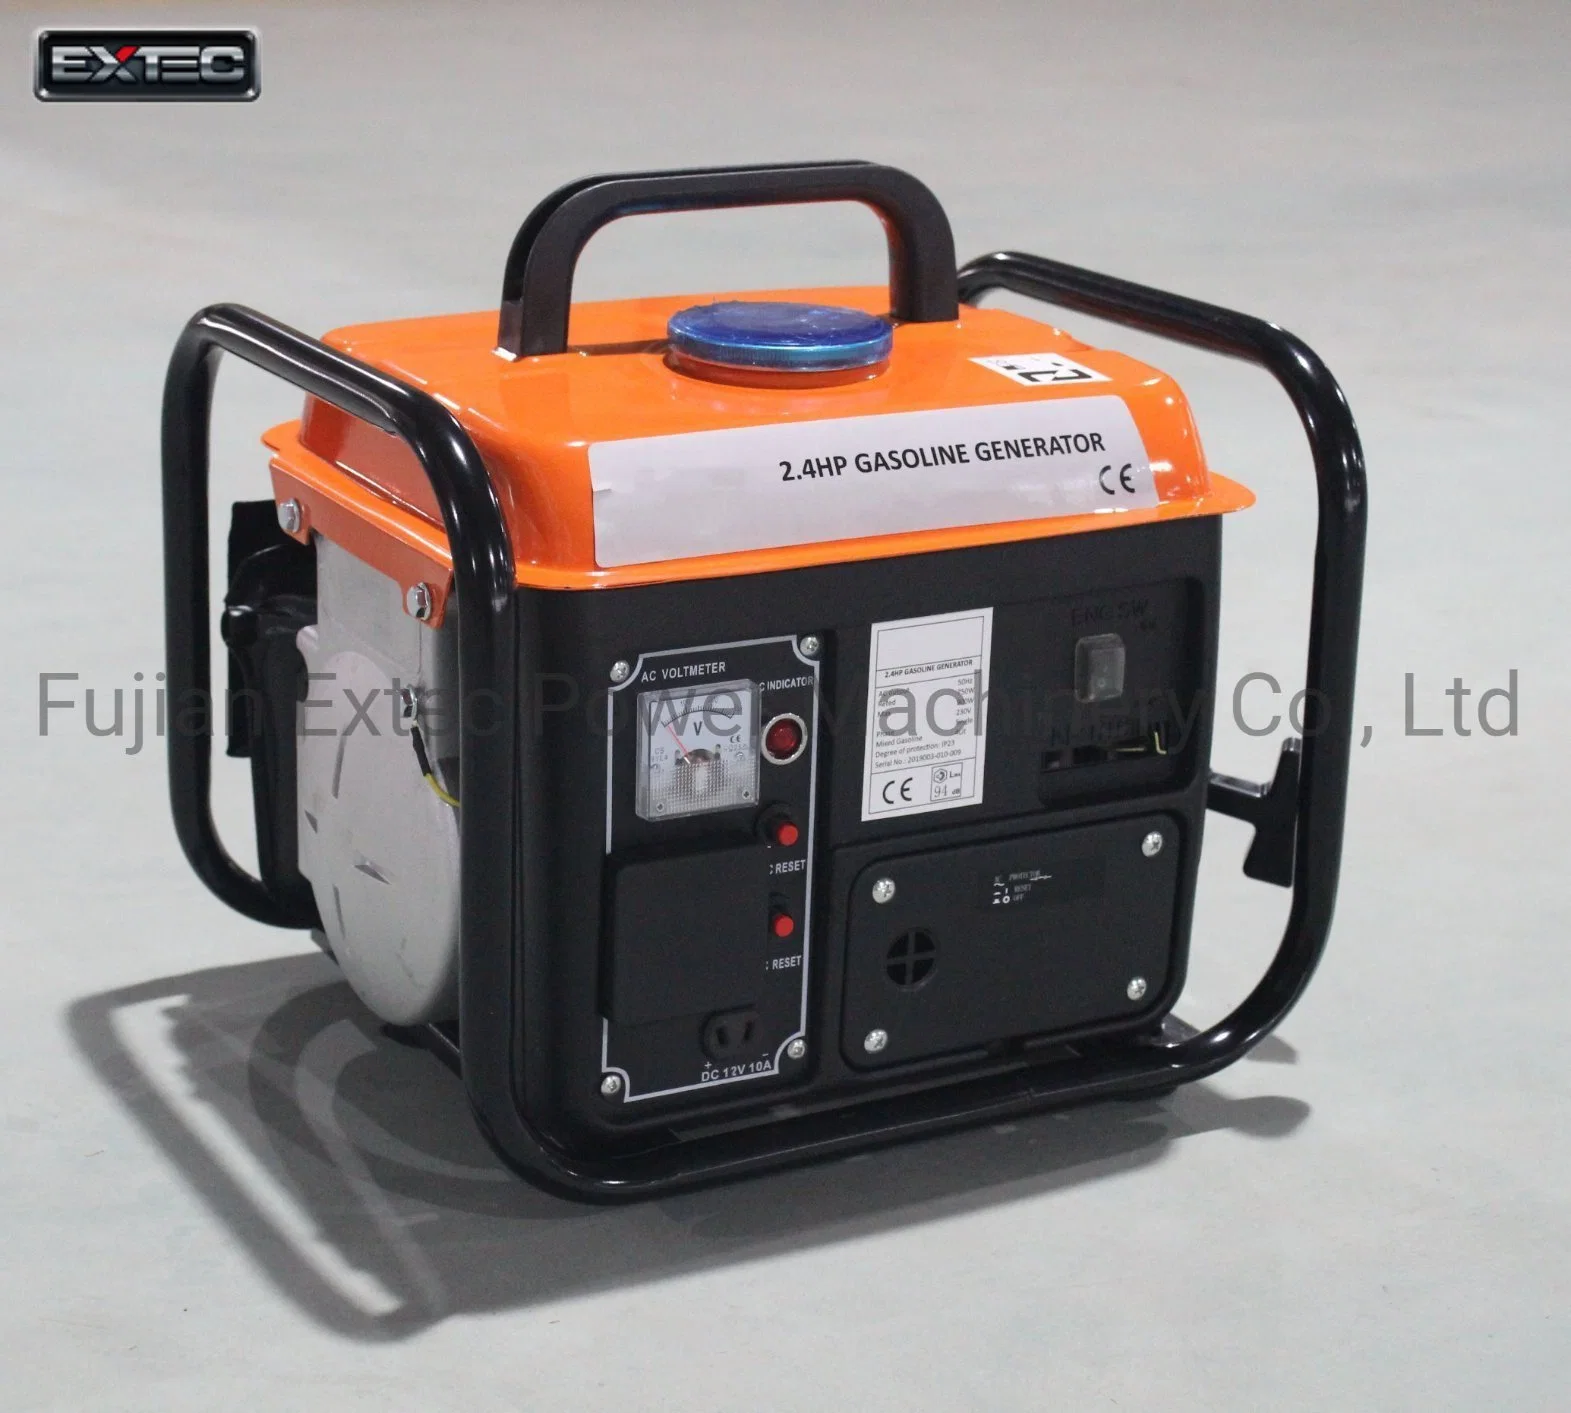 Generador Portátil fácil tirar silencio gasolina generador de emergencia estándar